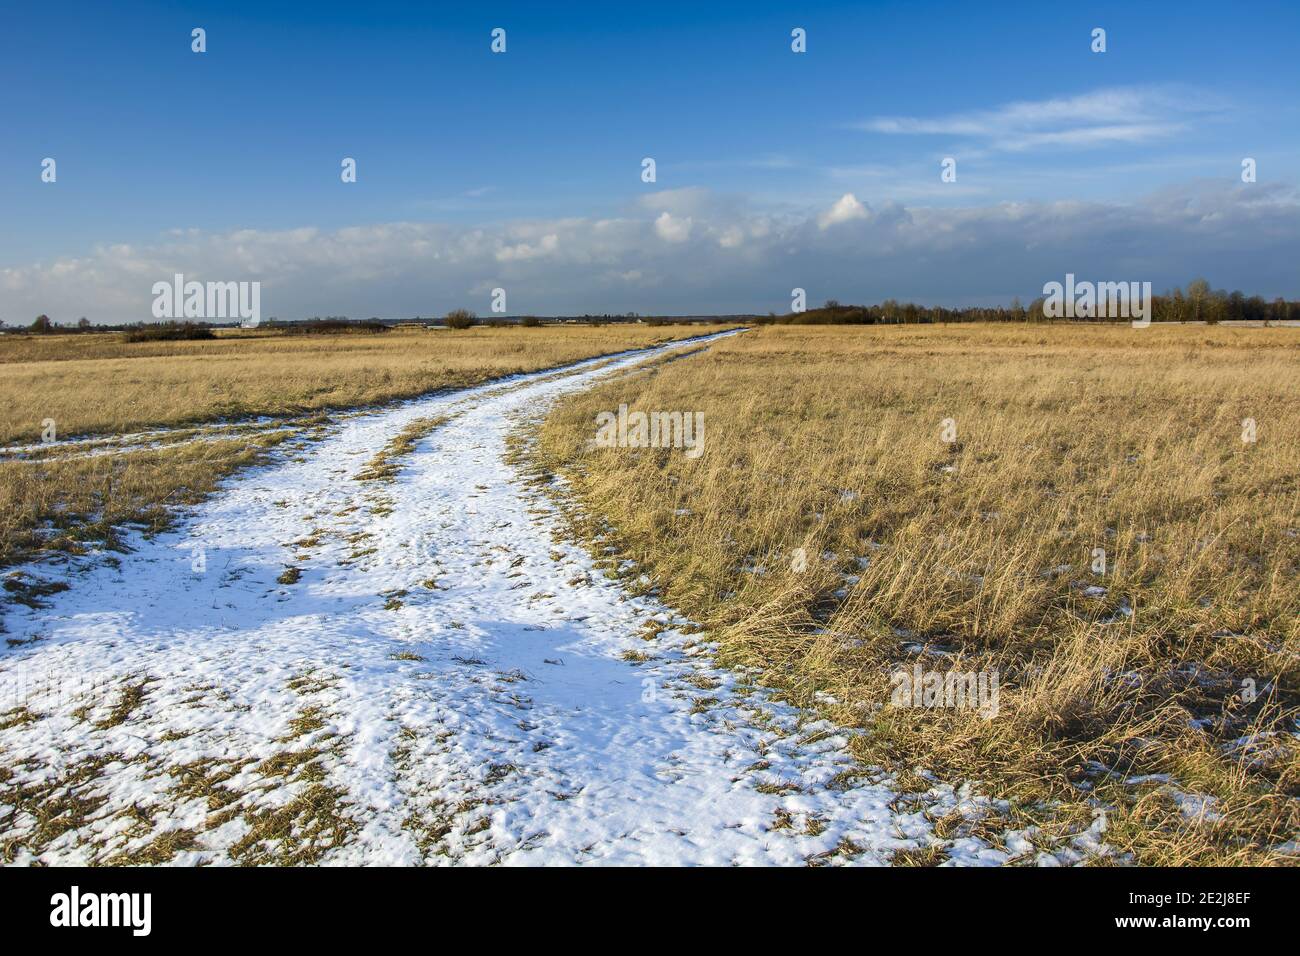 Route enneigée à travers un pré, nuages dans le ciel bleu, paysage d'hiver Banque D'Images